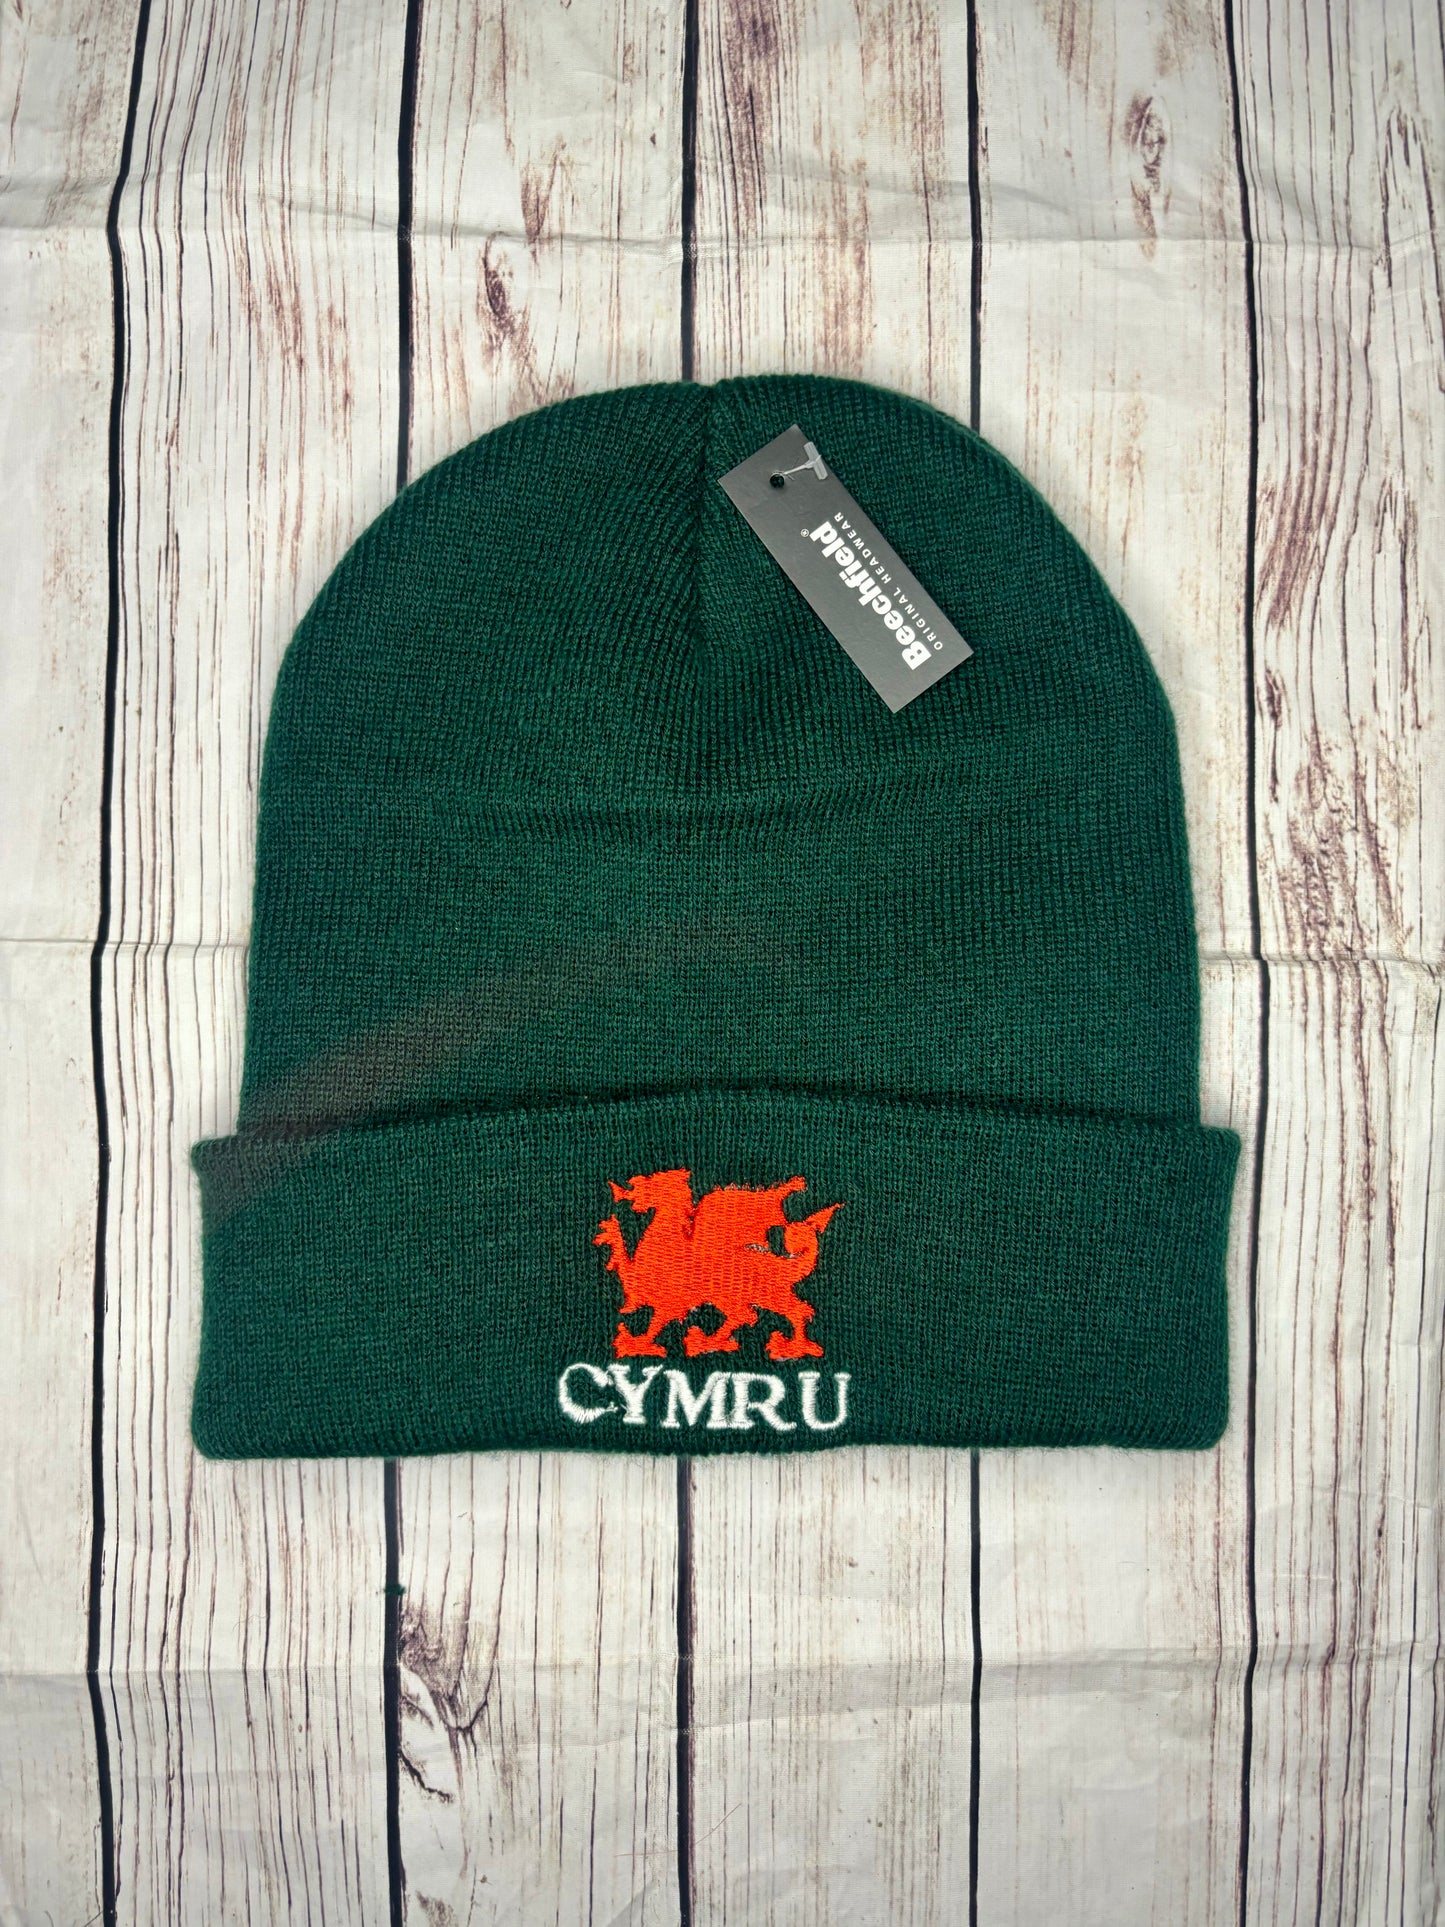 CYMRU Welsh beanie hat Discounted